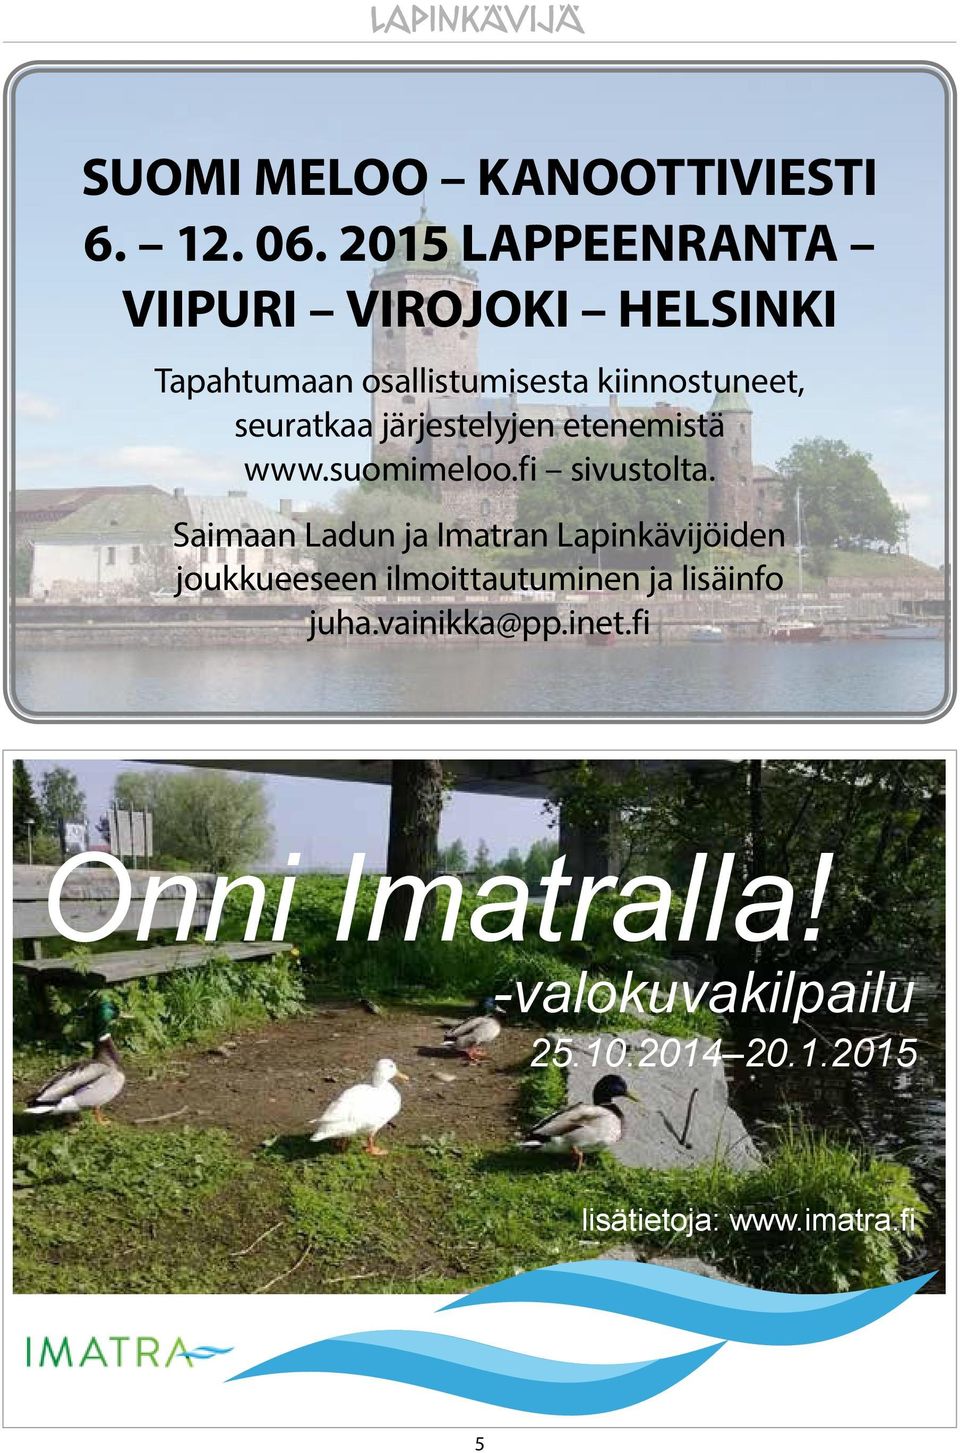 seuratkaa järjestelyjen etenemistä www.suomimeloo.fi sivustolta.